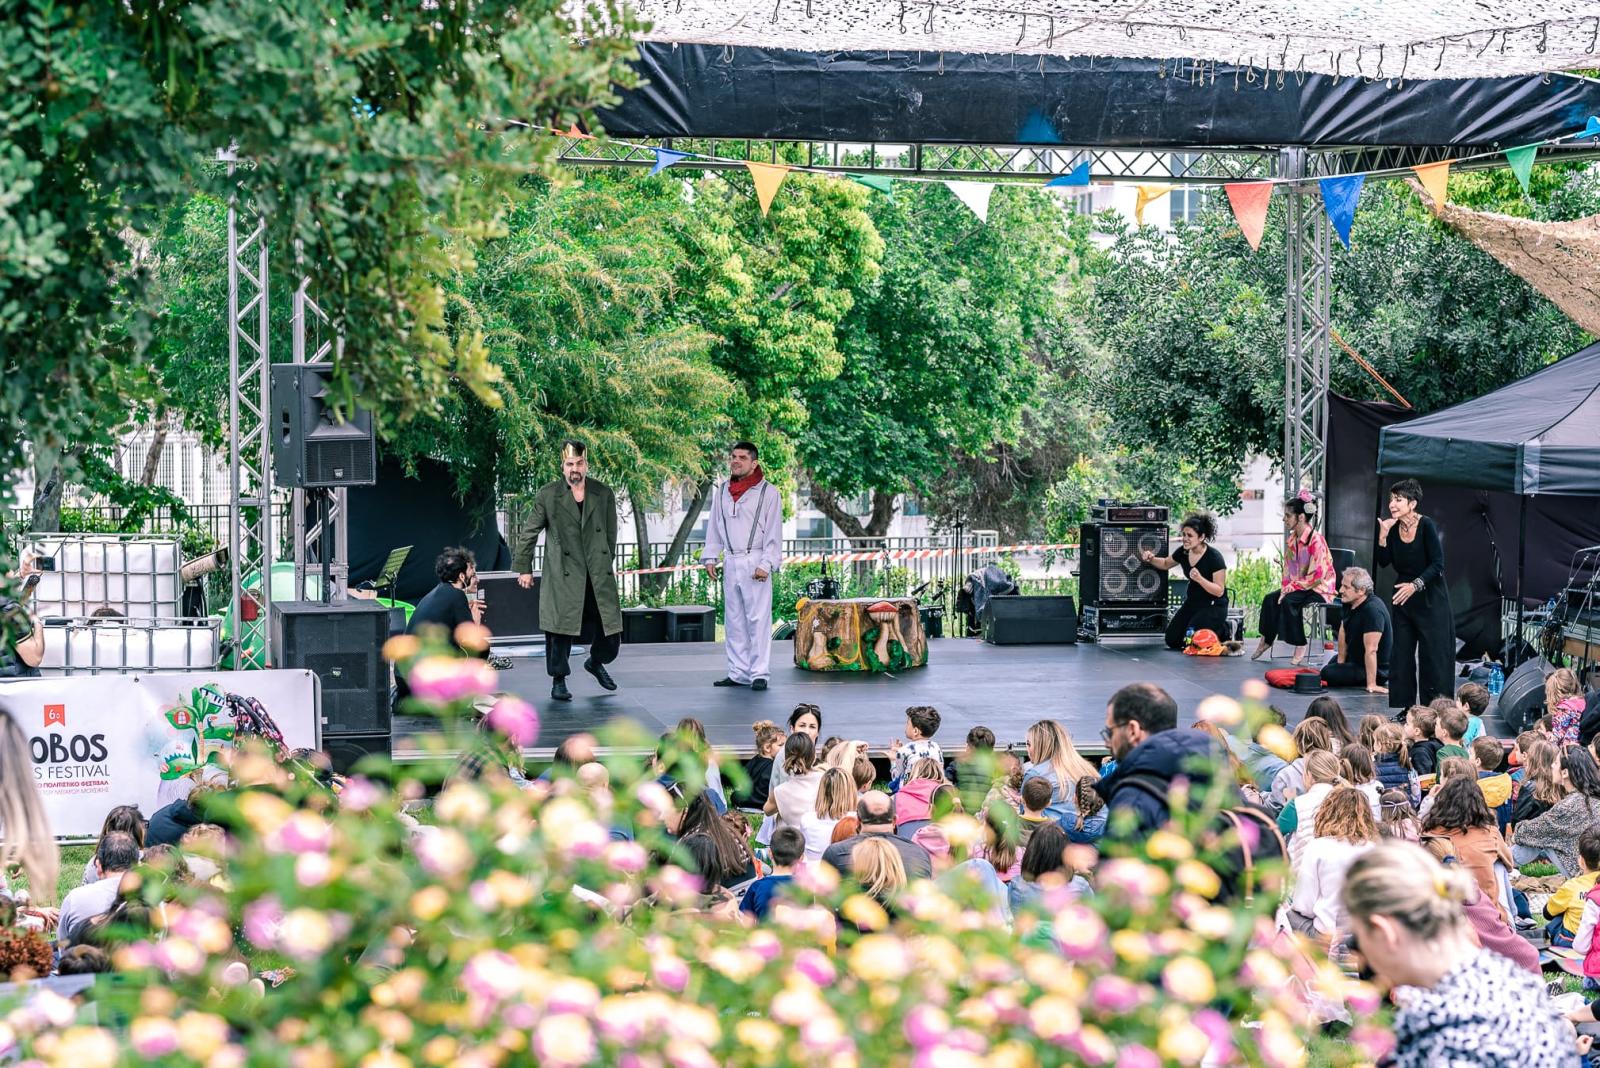 7o Bobos Arts Festival: Το παιδικό πολιτιστικό φεστιβάλ έρχεται στον κήπο του Μεγάρου τον Μάιο